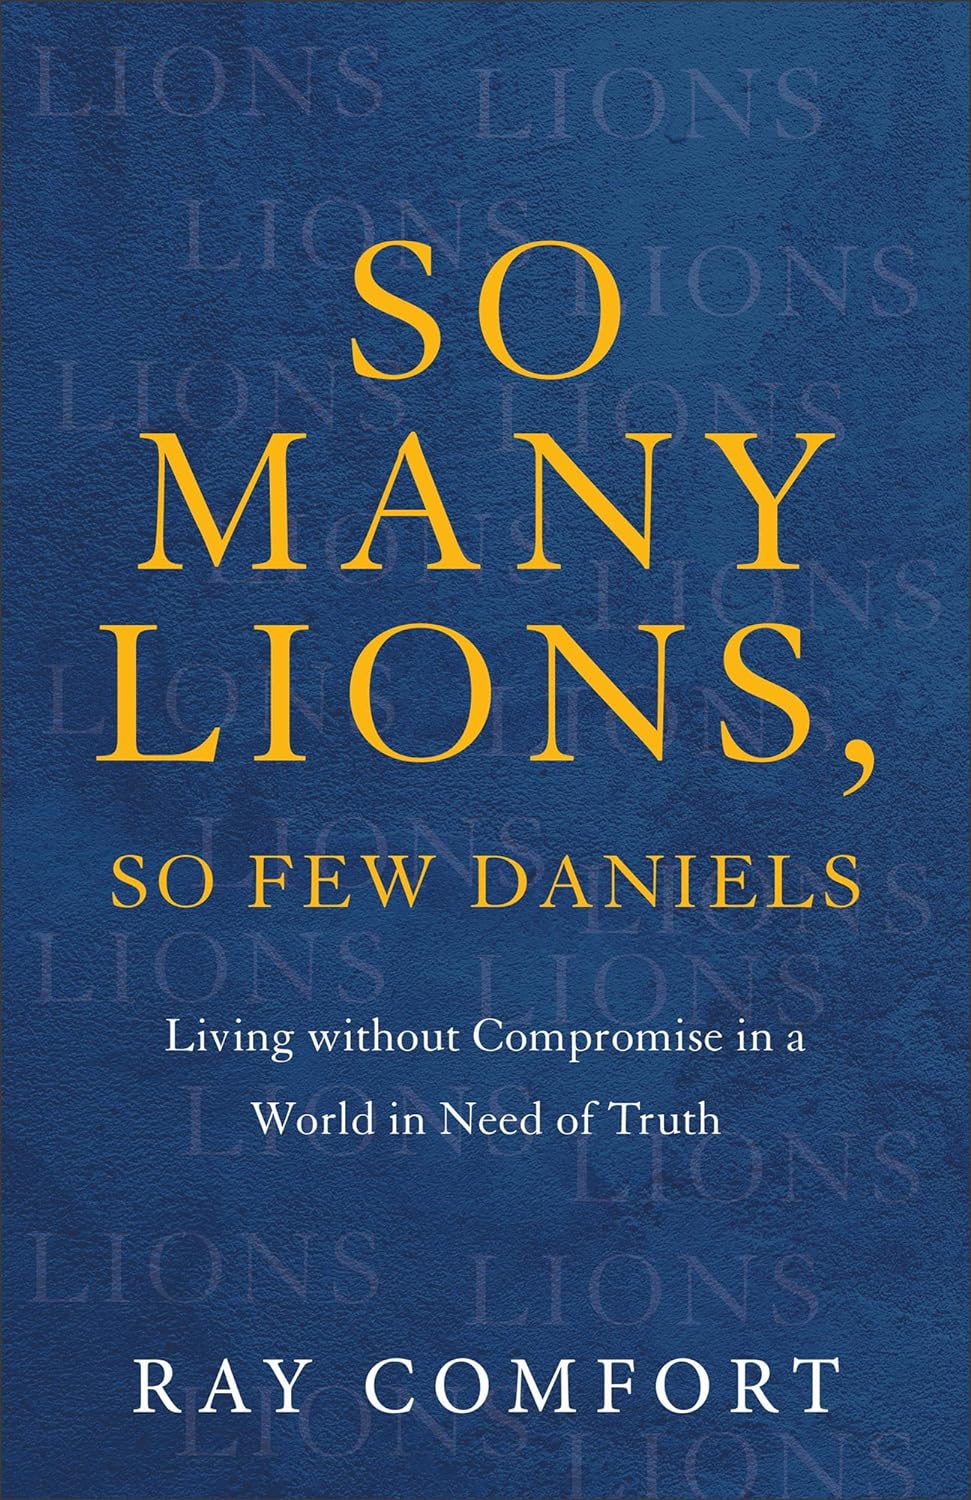 So Many Lions, So Few Daniels